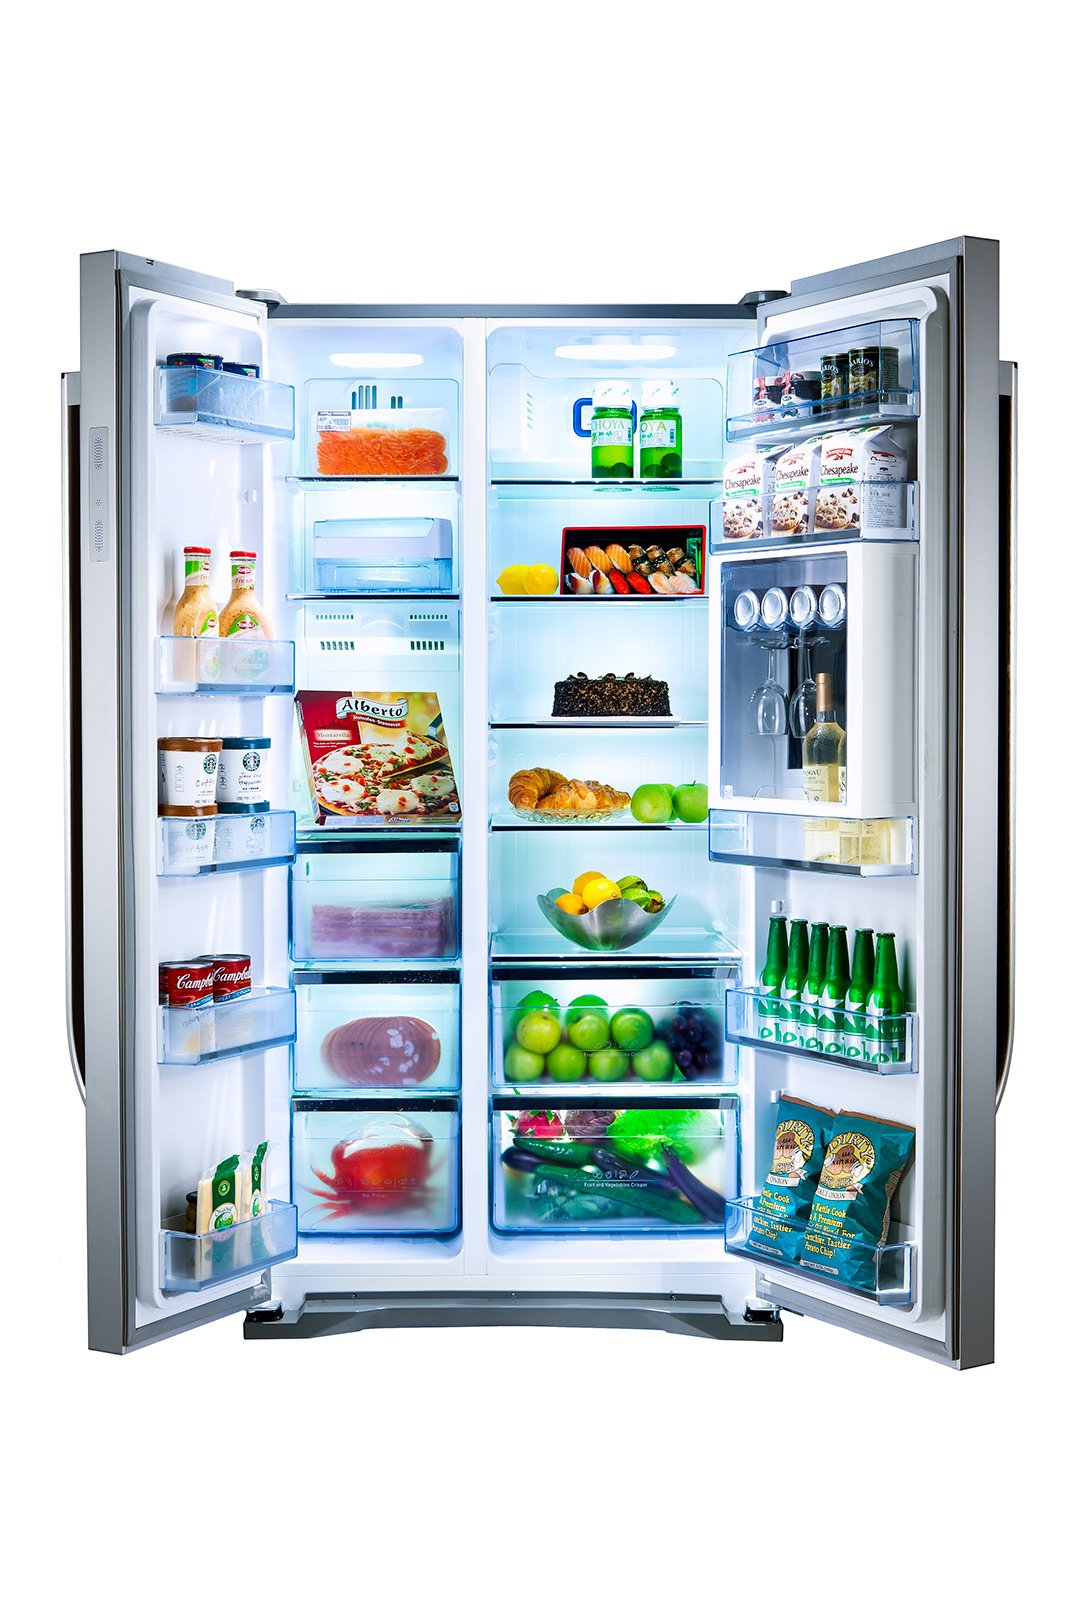 Esistono frigoriferi con un sistema di raffreddamento ibrido?